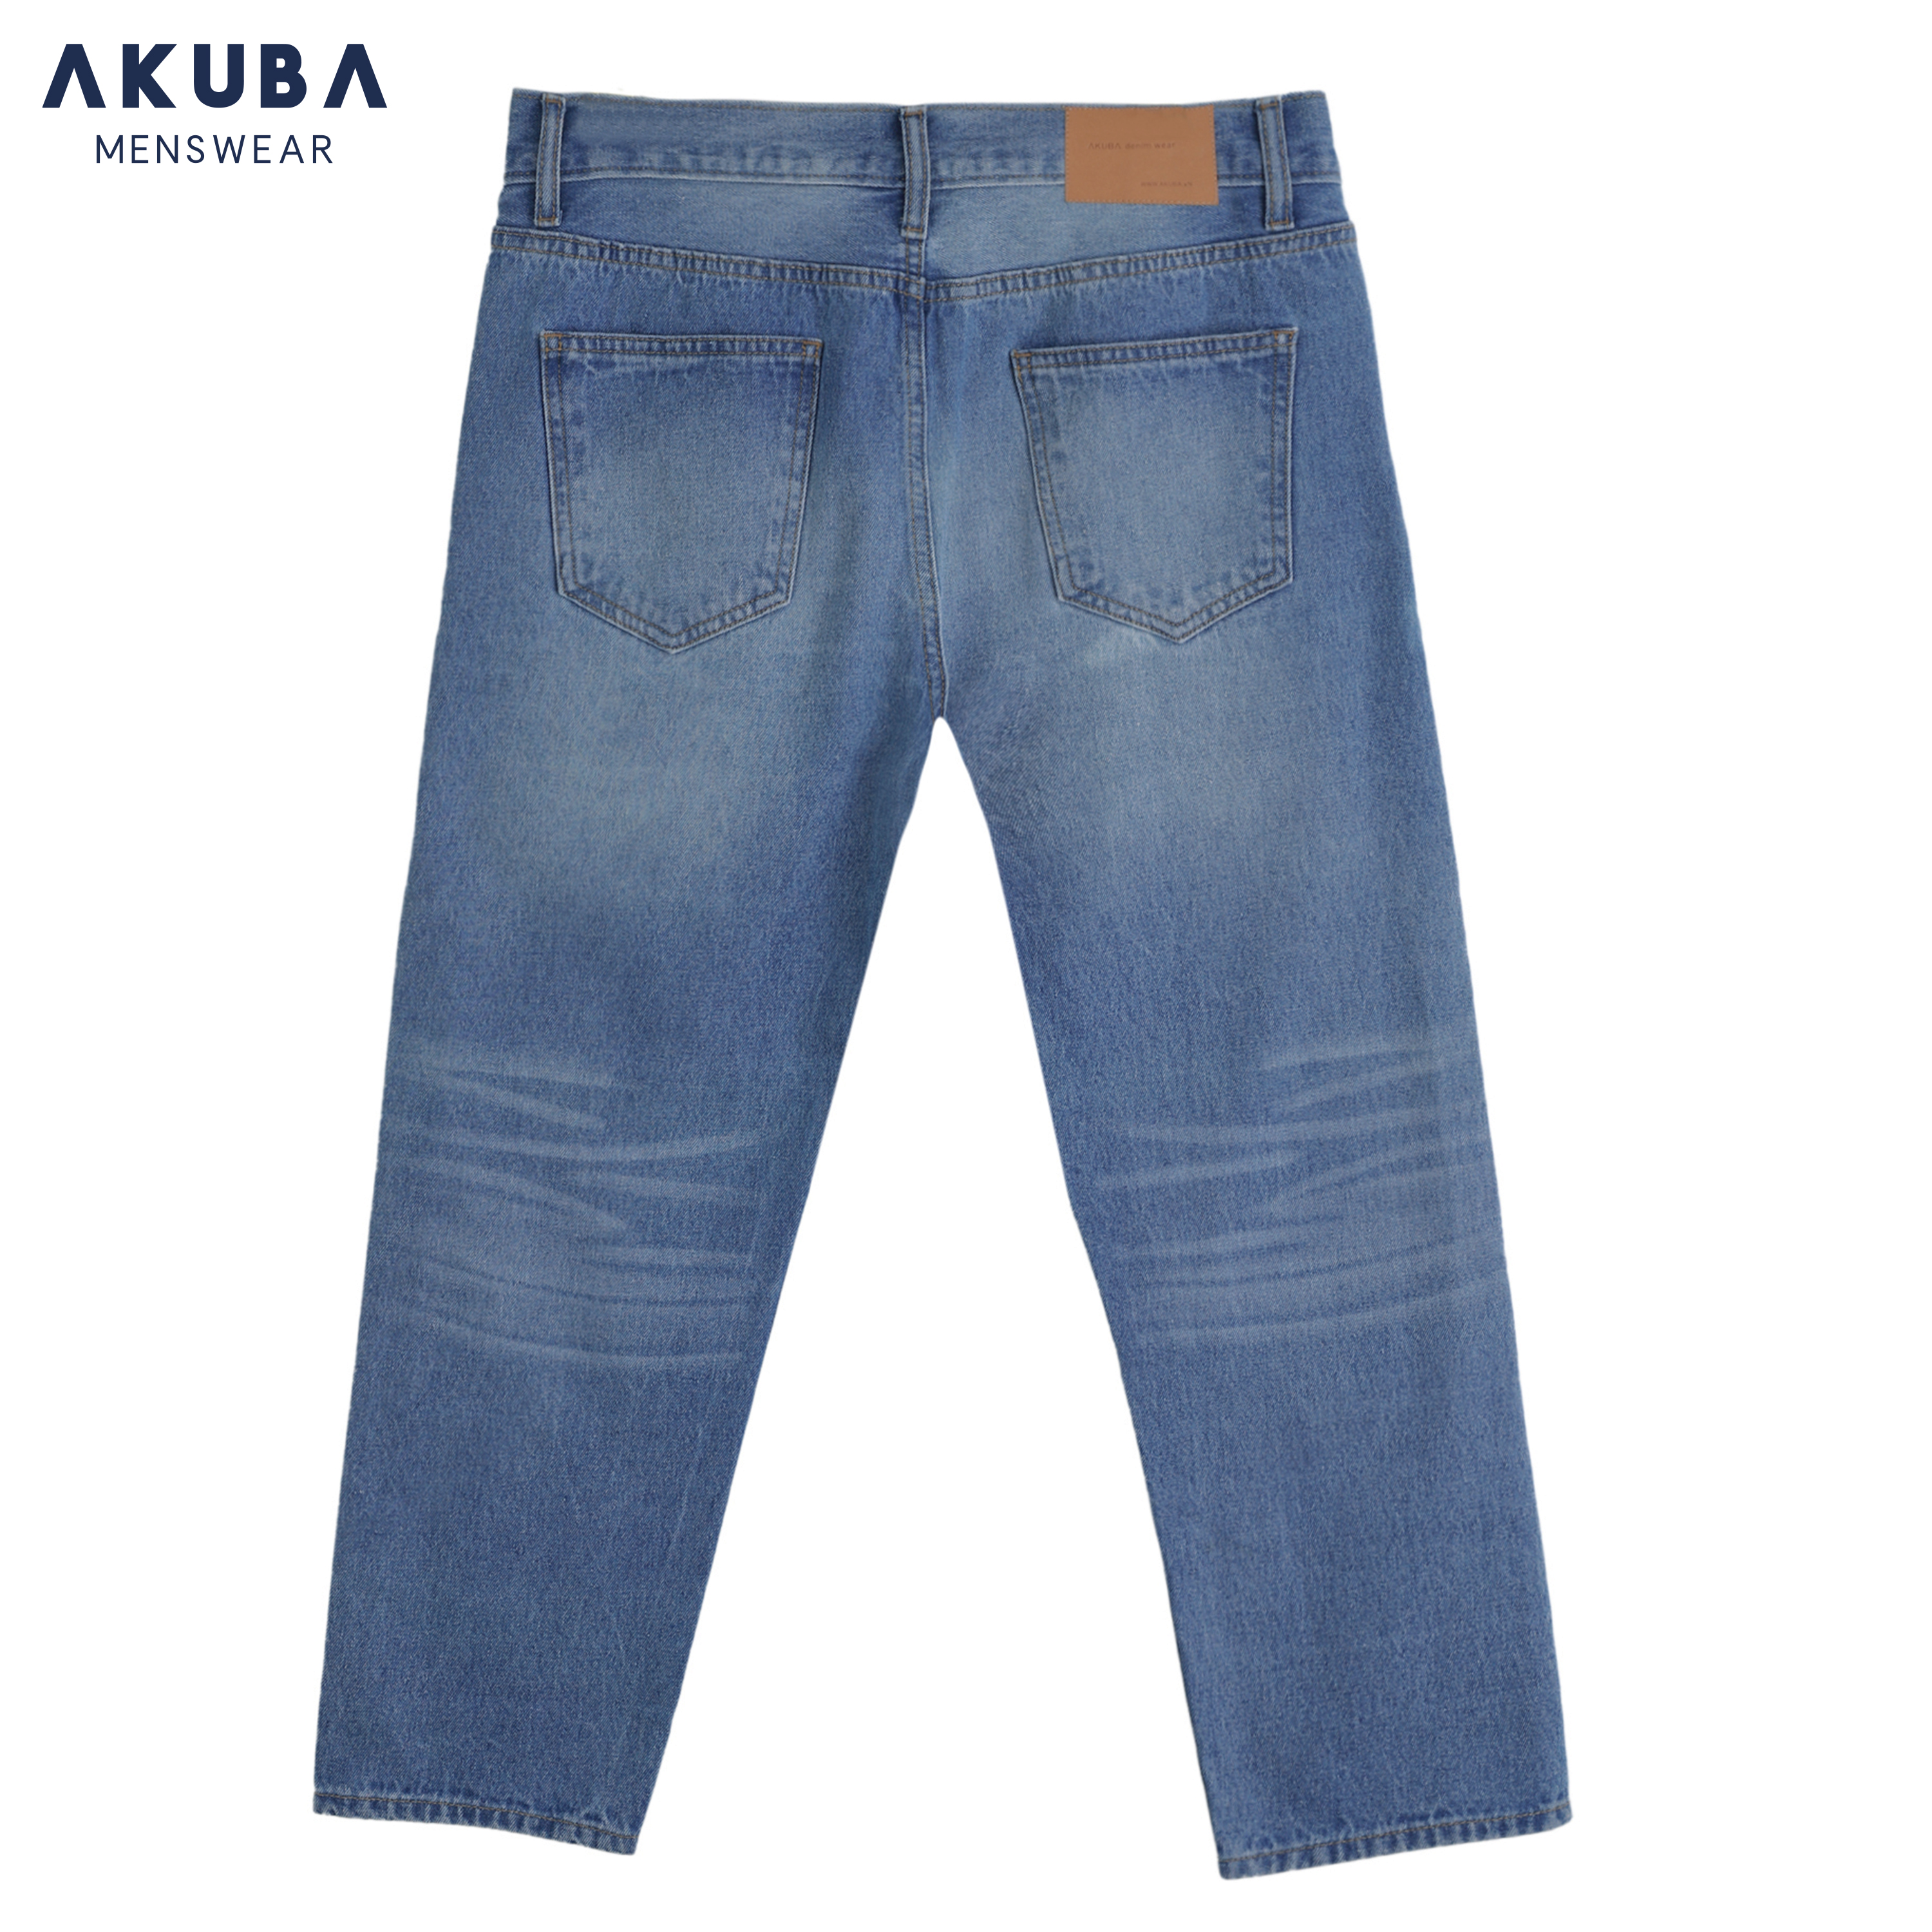 Quần jean dài nam AKUBA quần dài form slimfit chất cotton thoáng mát, co dãn tốt  - 01D0136